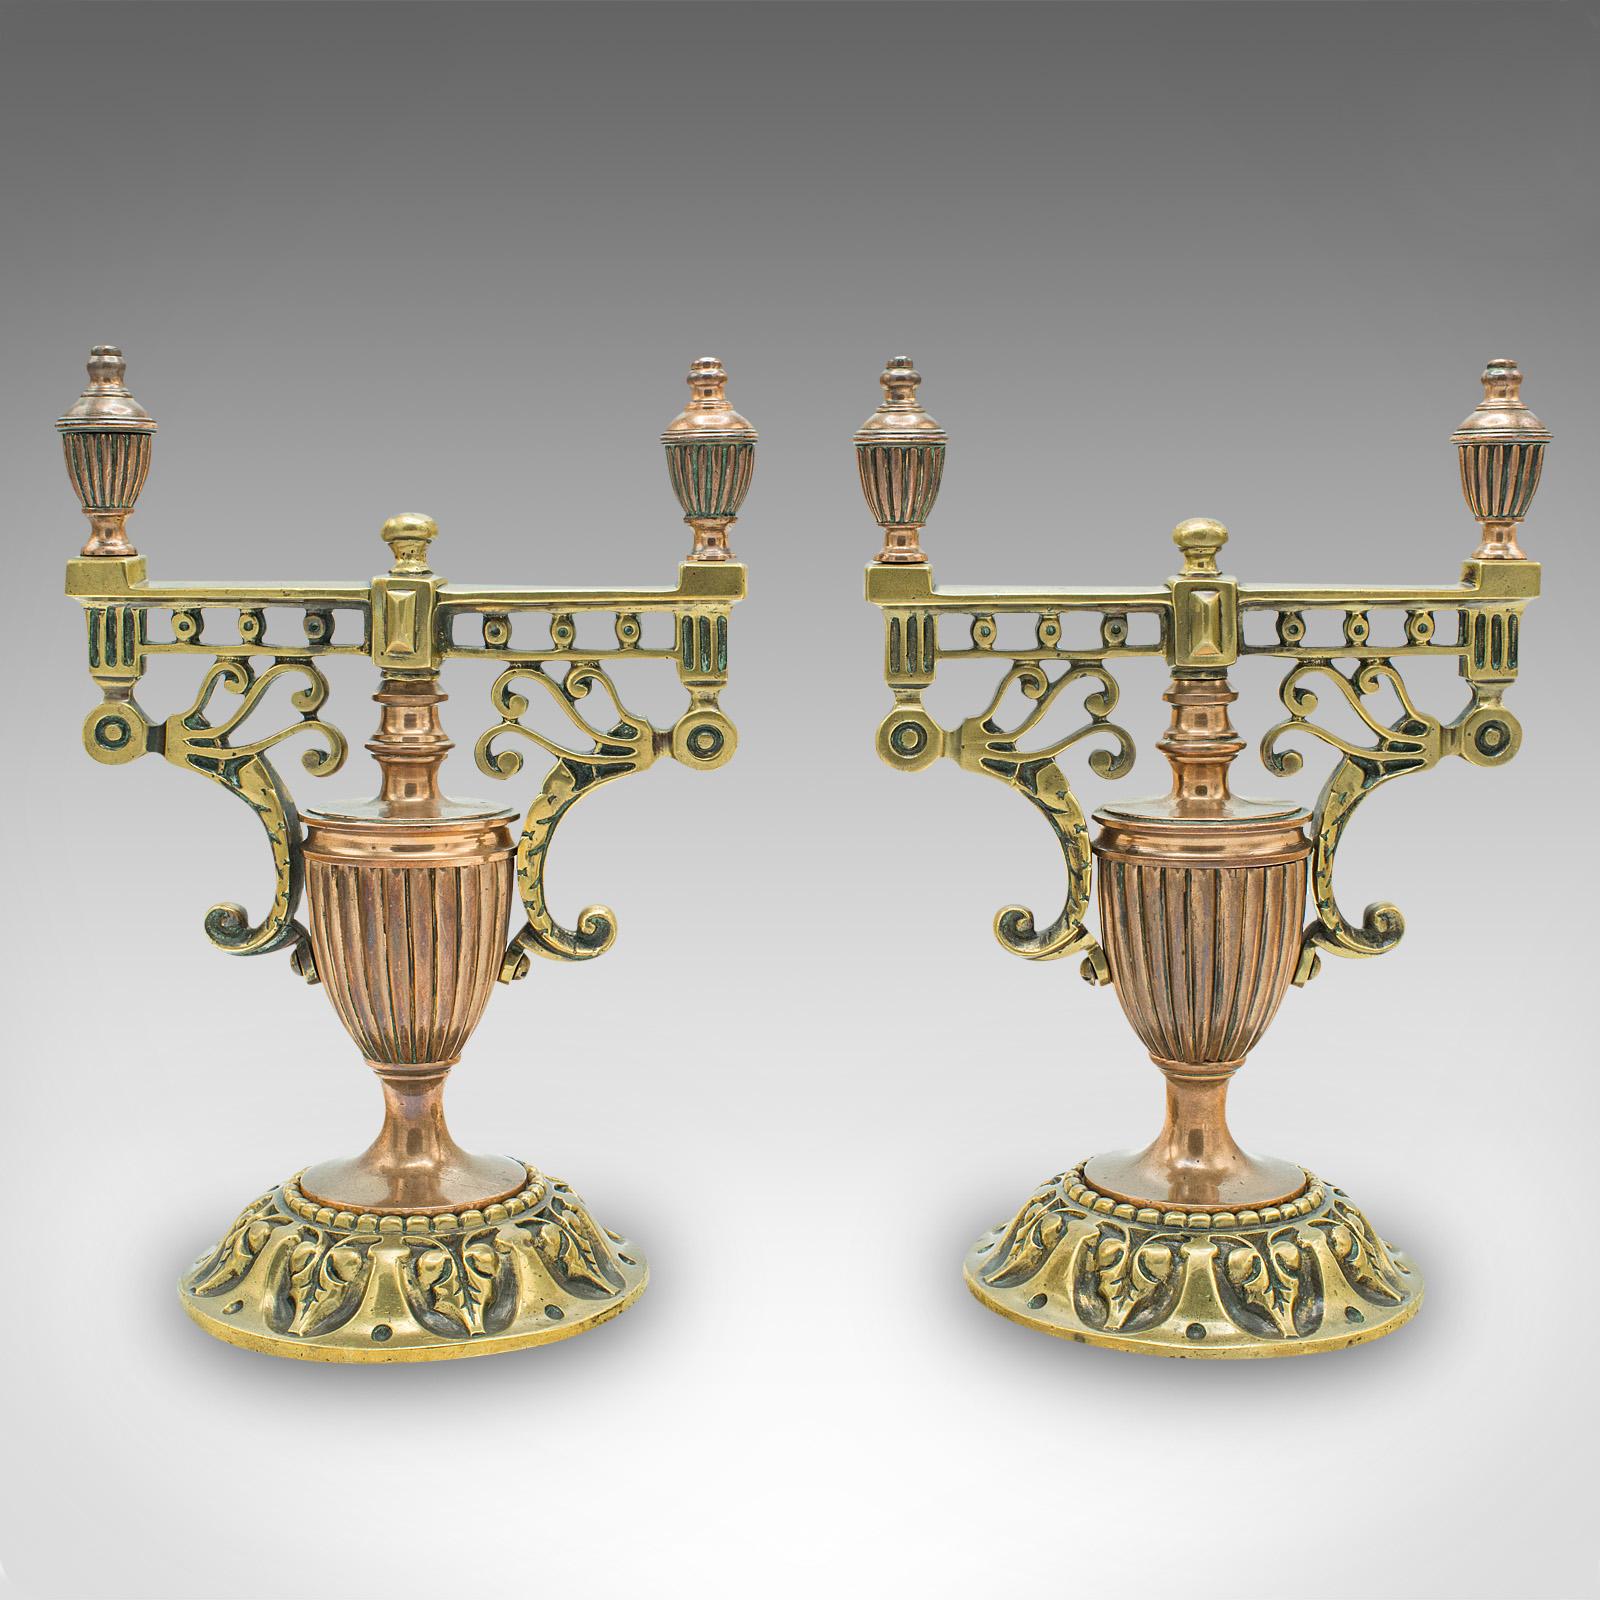 Il s'agit d'une paire de porte-outils décoratifs anciens. Garniture de cheminée en laiton et cuivre de style CIRCA, dans le goût du Grand Tour, datant du début de la période victorienne, vers 1860.

Magnifiquement orné et d'une superbe qualité,